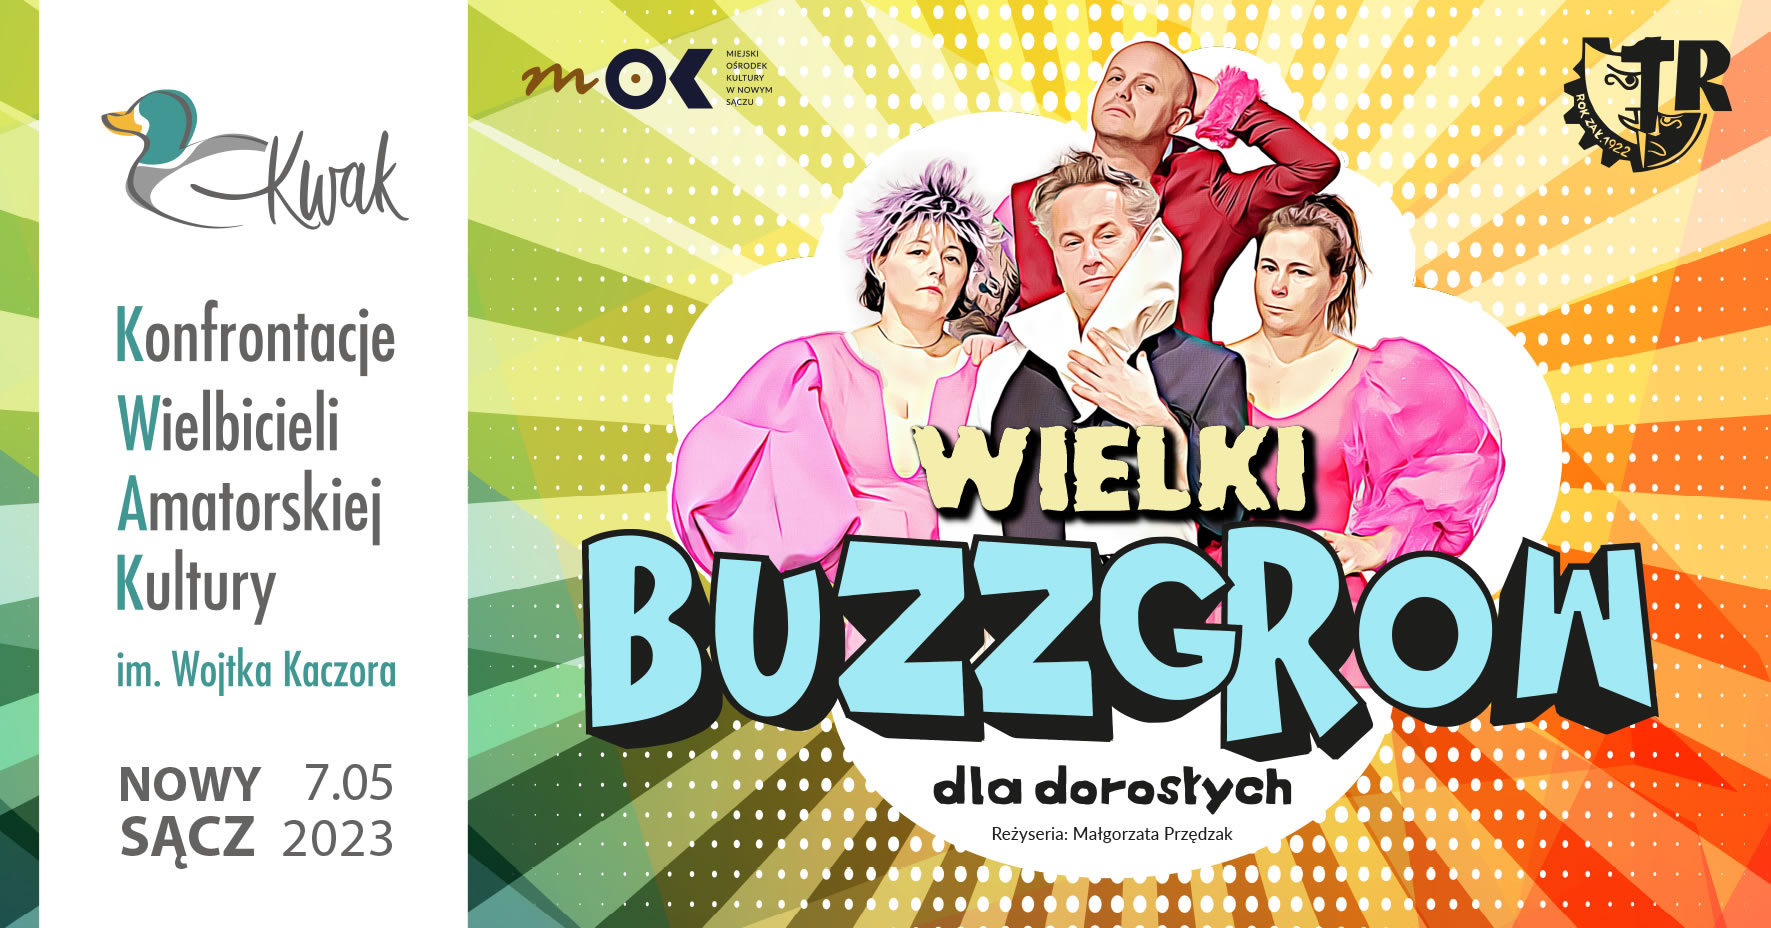 Premiera musicalu "Wielki BuzzGrow dla dorosłych" z muzyką na żywo